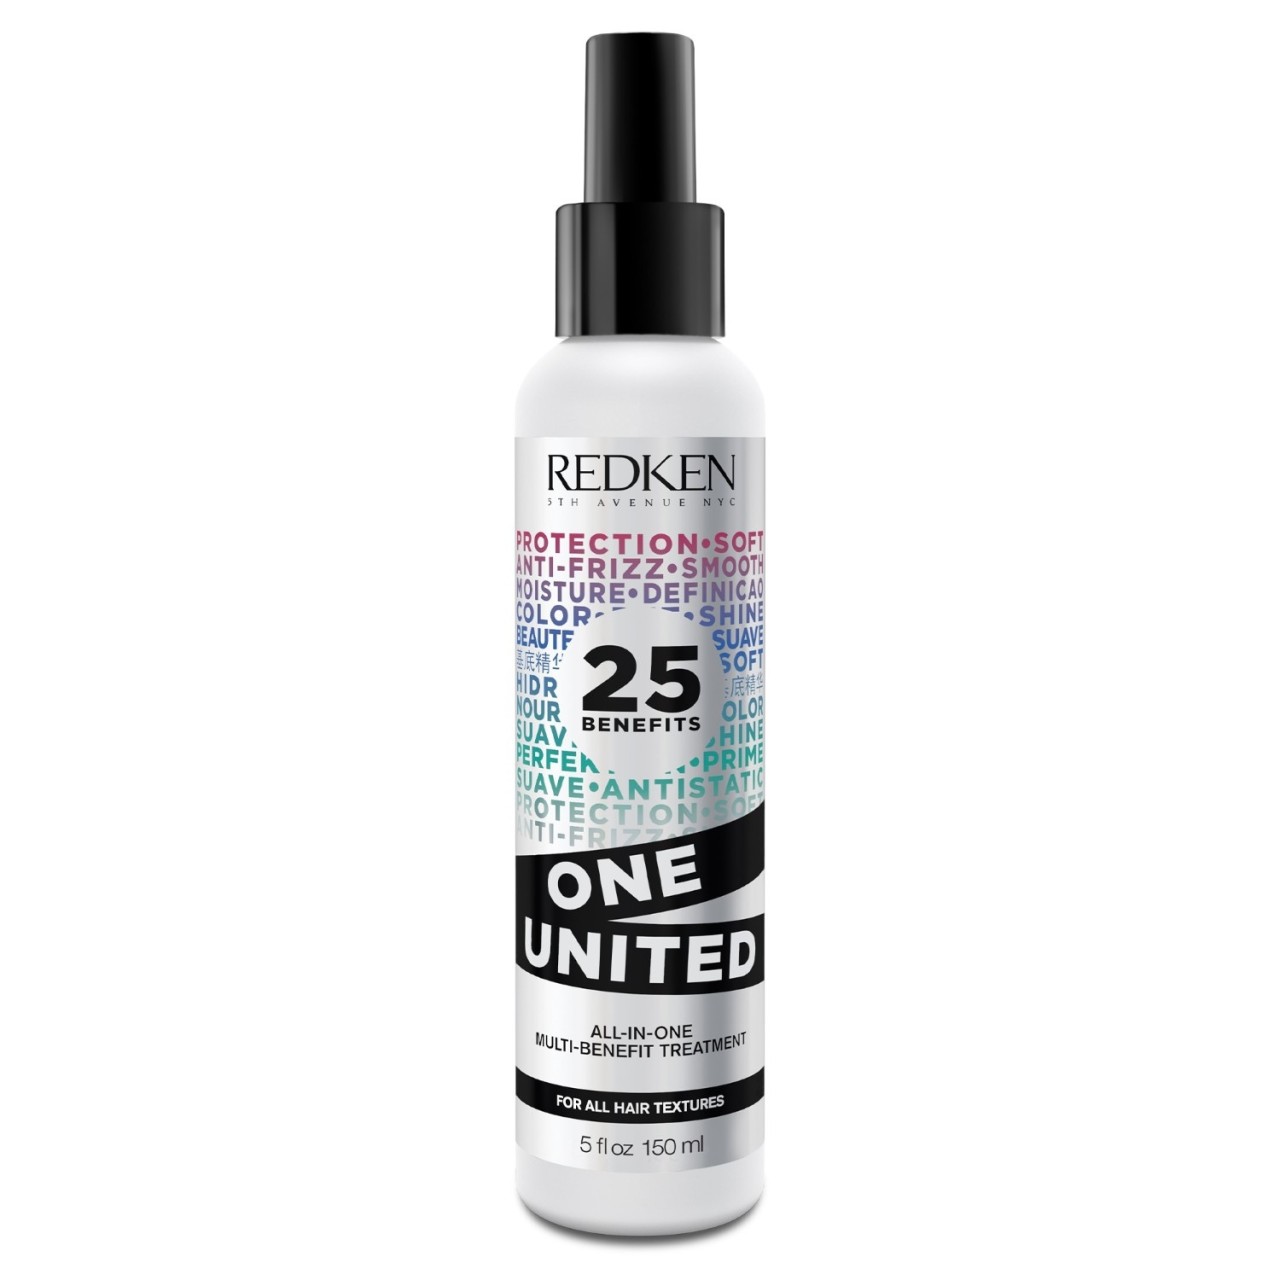 Redken One United Spray 25 Benefits